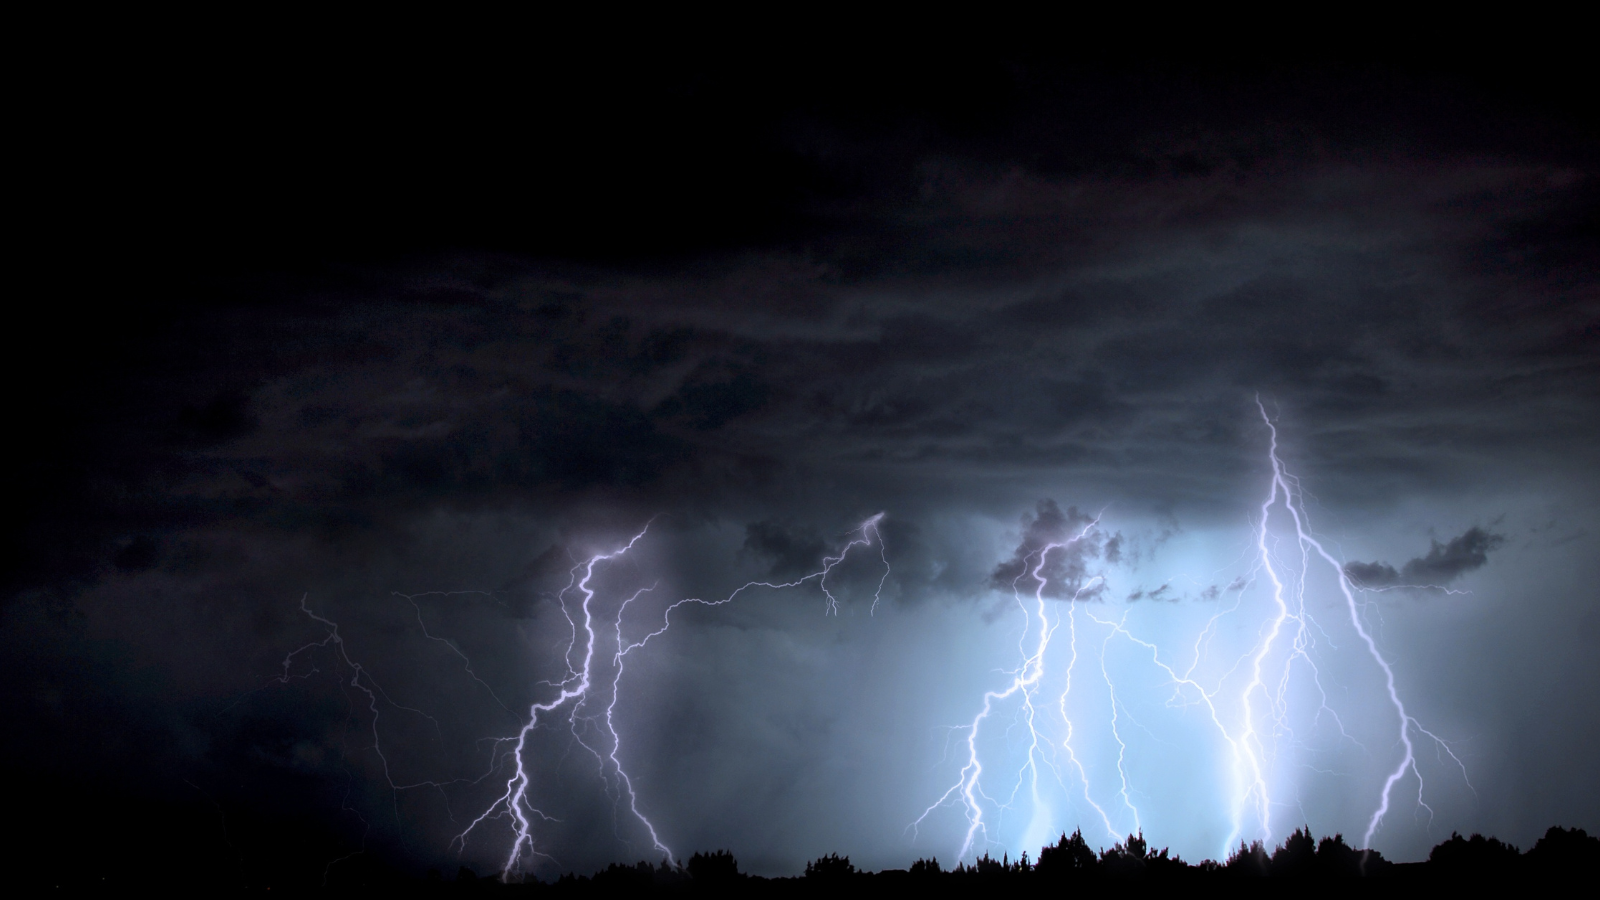 Lightning striking amongst trees during a thunder storm.